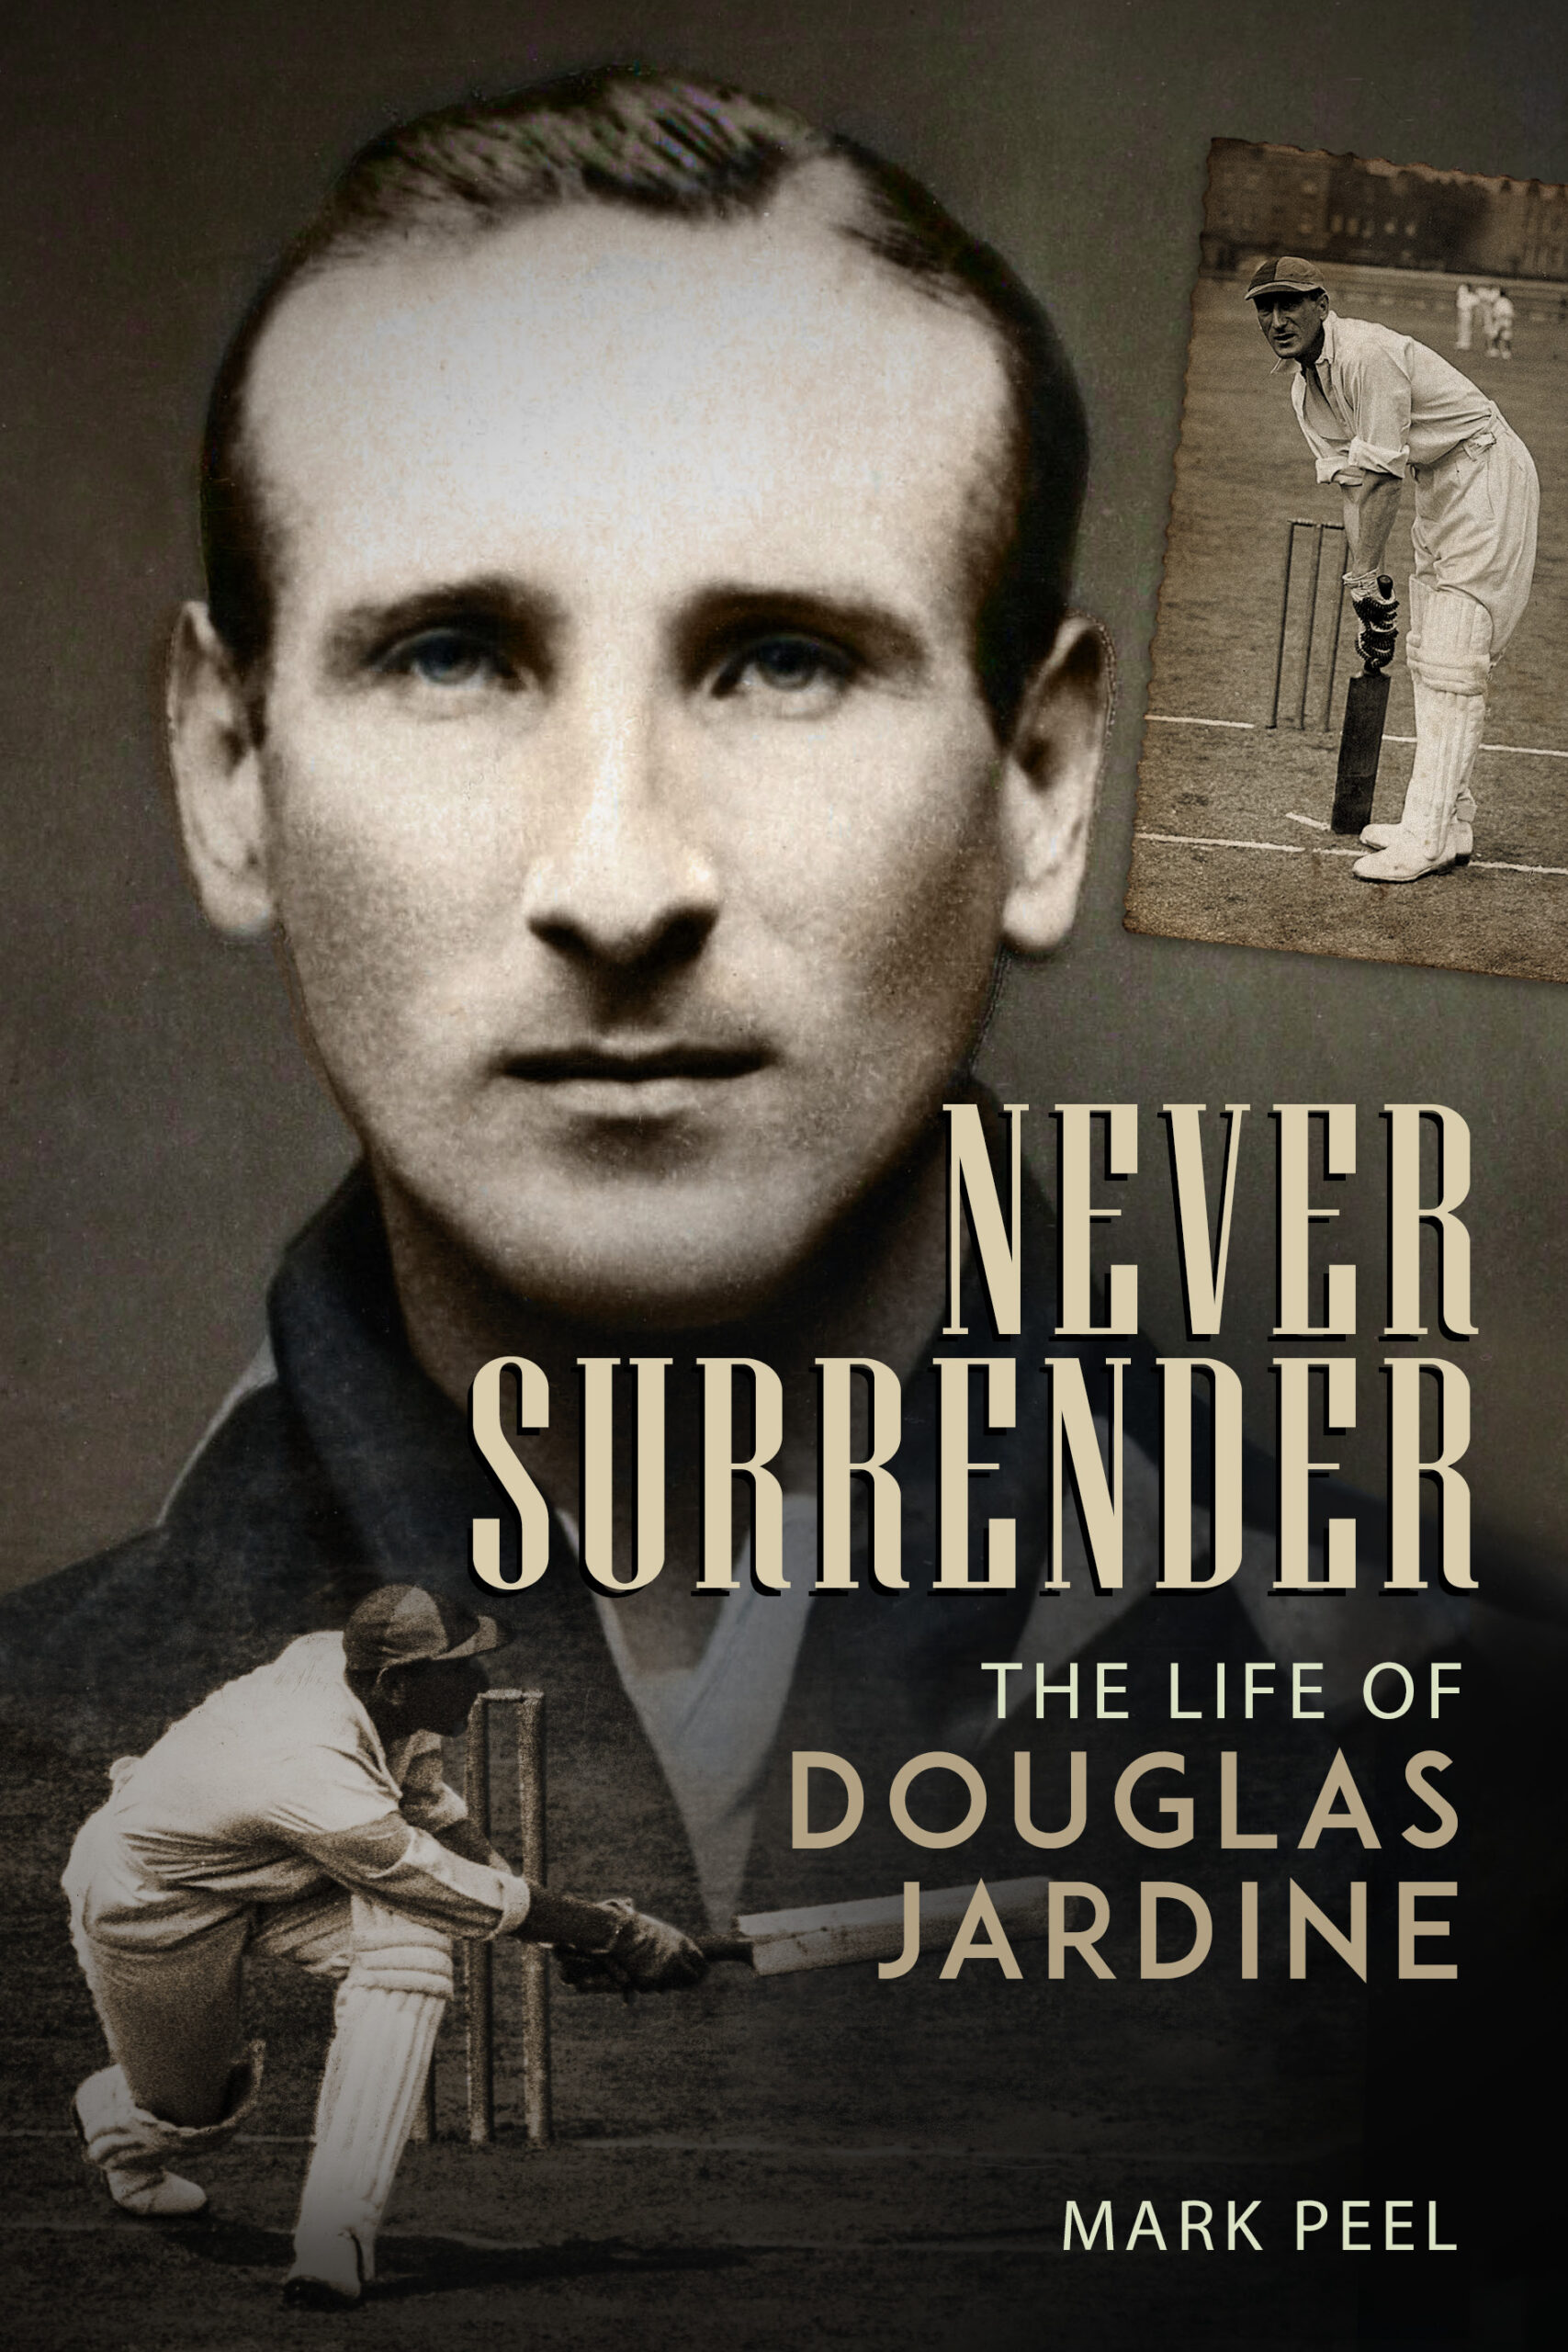 Never Surrender by Douglas Jardine